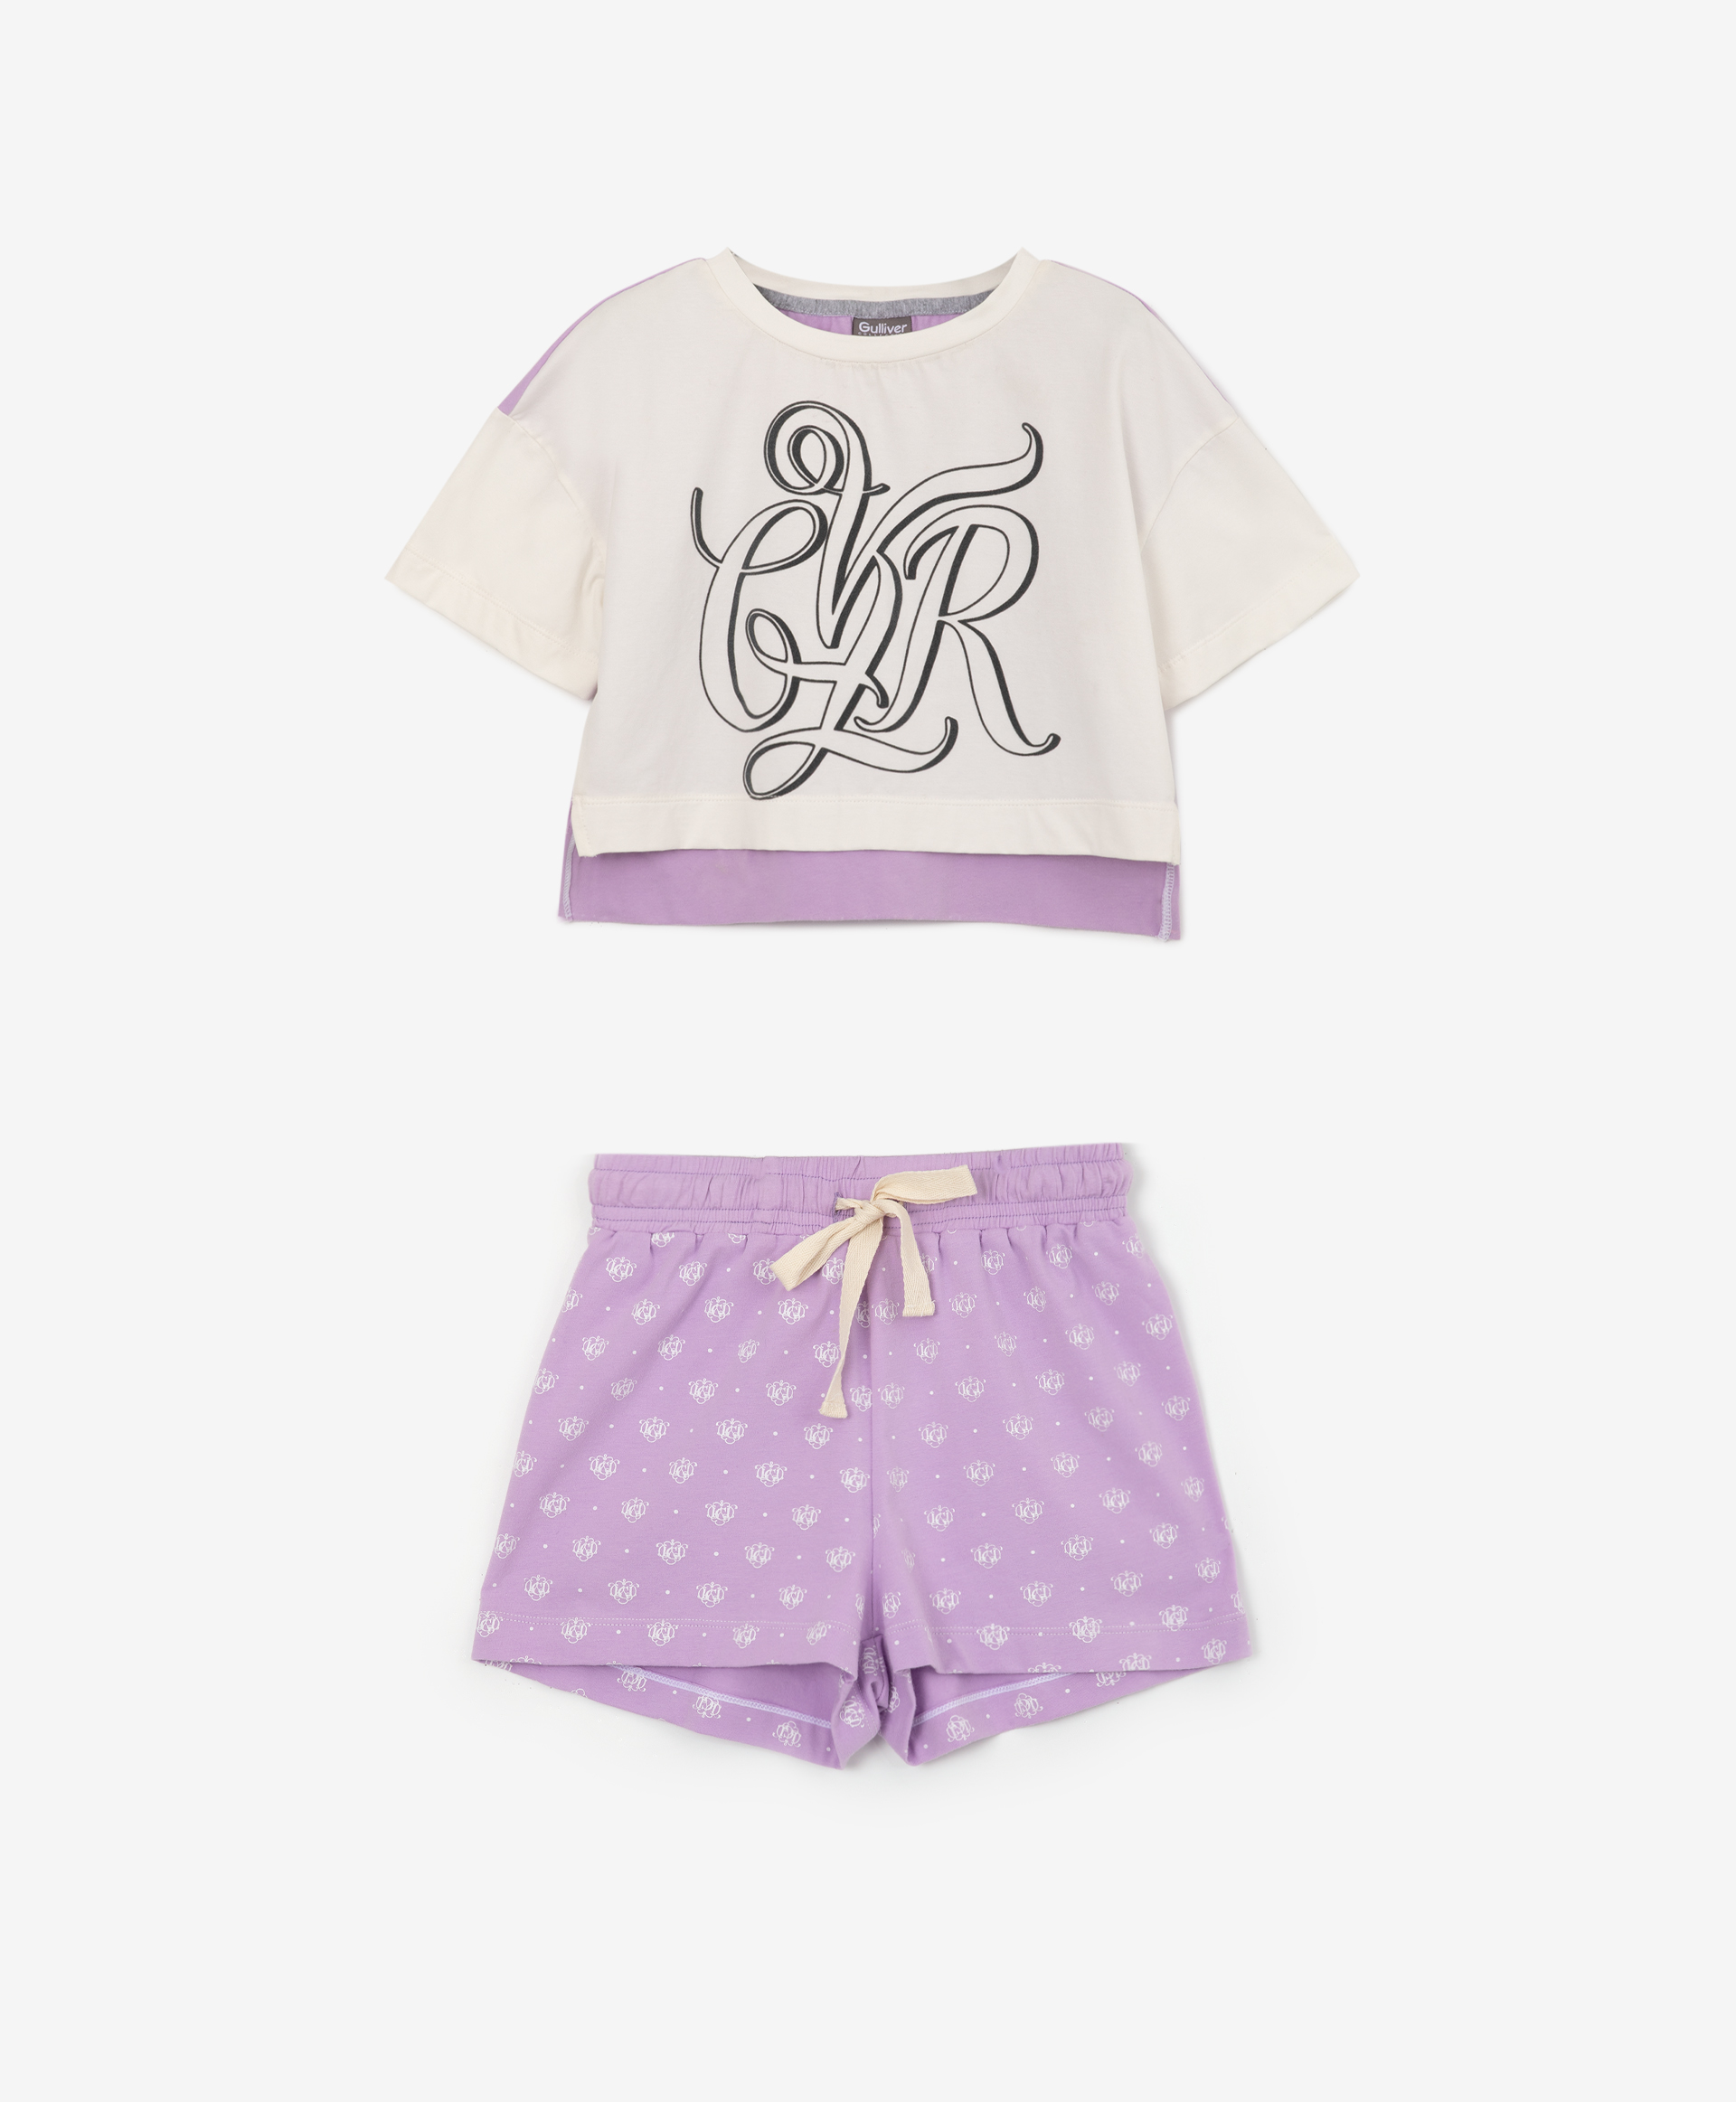 Пижама свободной формы с авторским рисунком Gulliver 22200GC9701, размер 134-140, цвет фиолетовый - фото 1